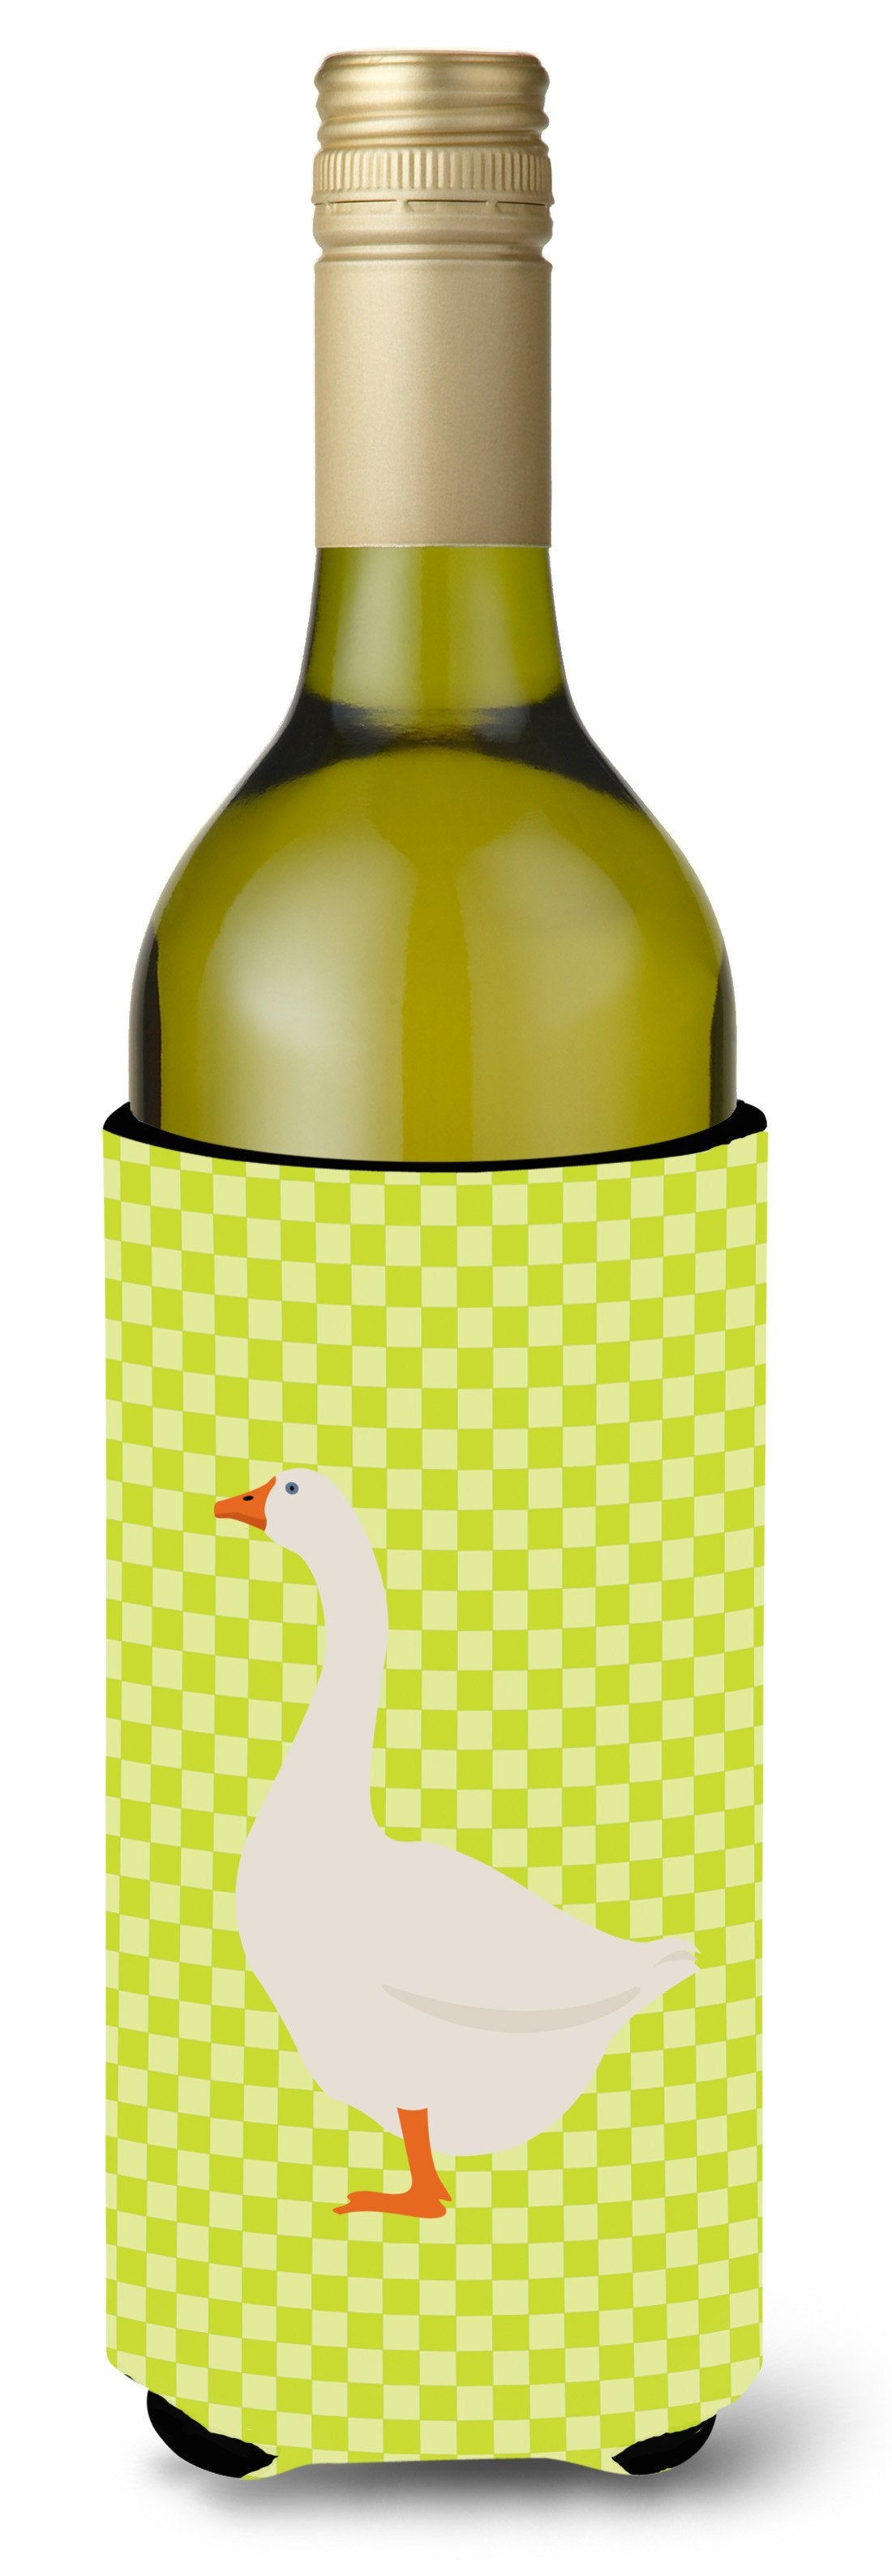 Embden Goose Green Wine Bottle Beverge Insulator Hugger BB7718LITERK by Caroline's Treasures